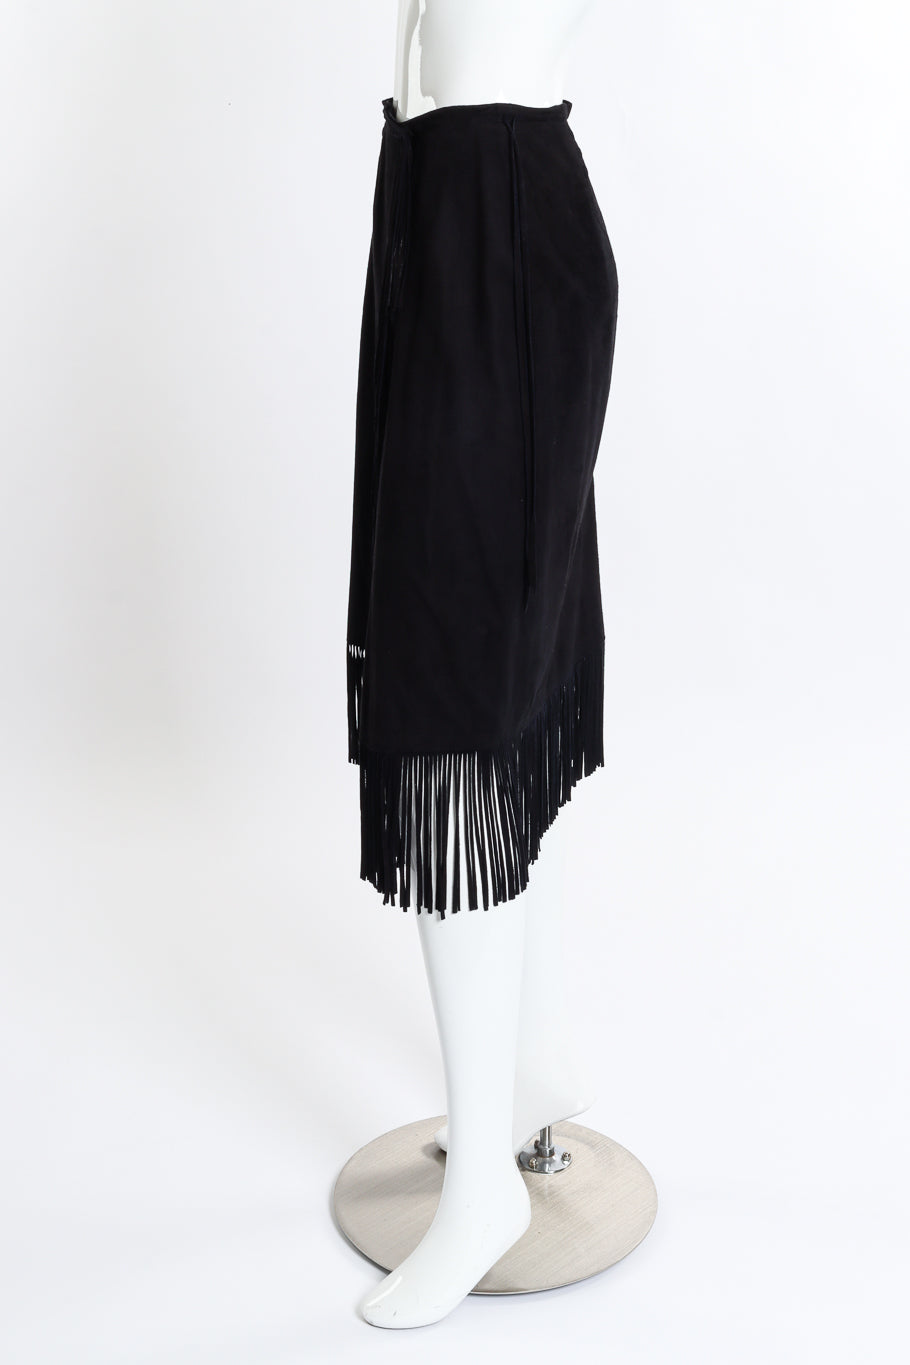 Vintage Char & Sher Microsuede Fringe Wrap Skirt side on mannequin @recess la